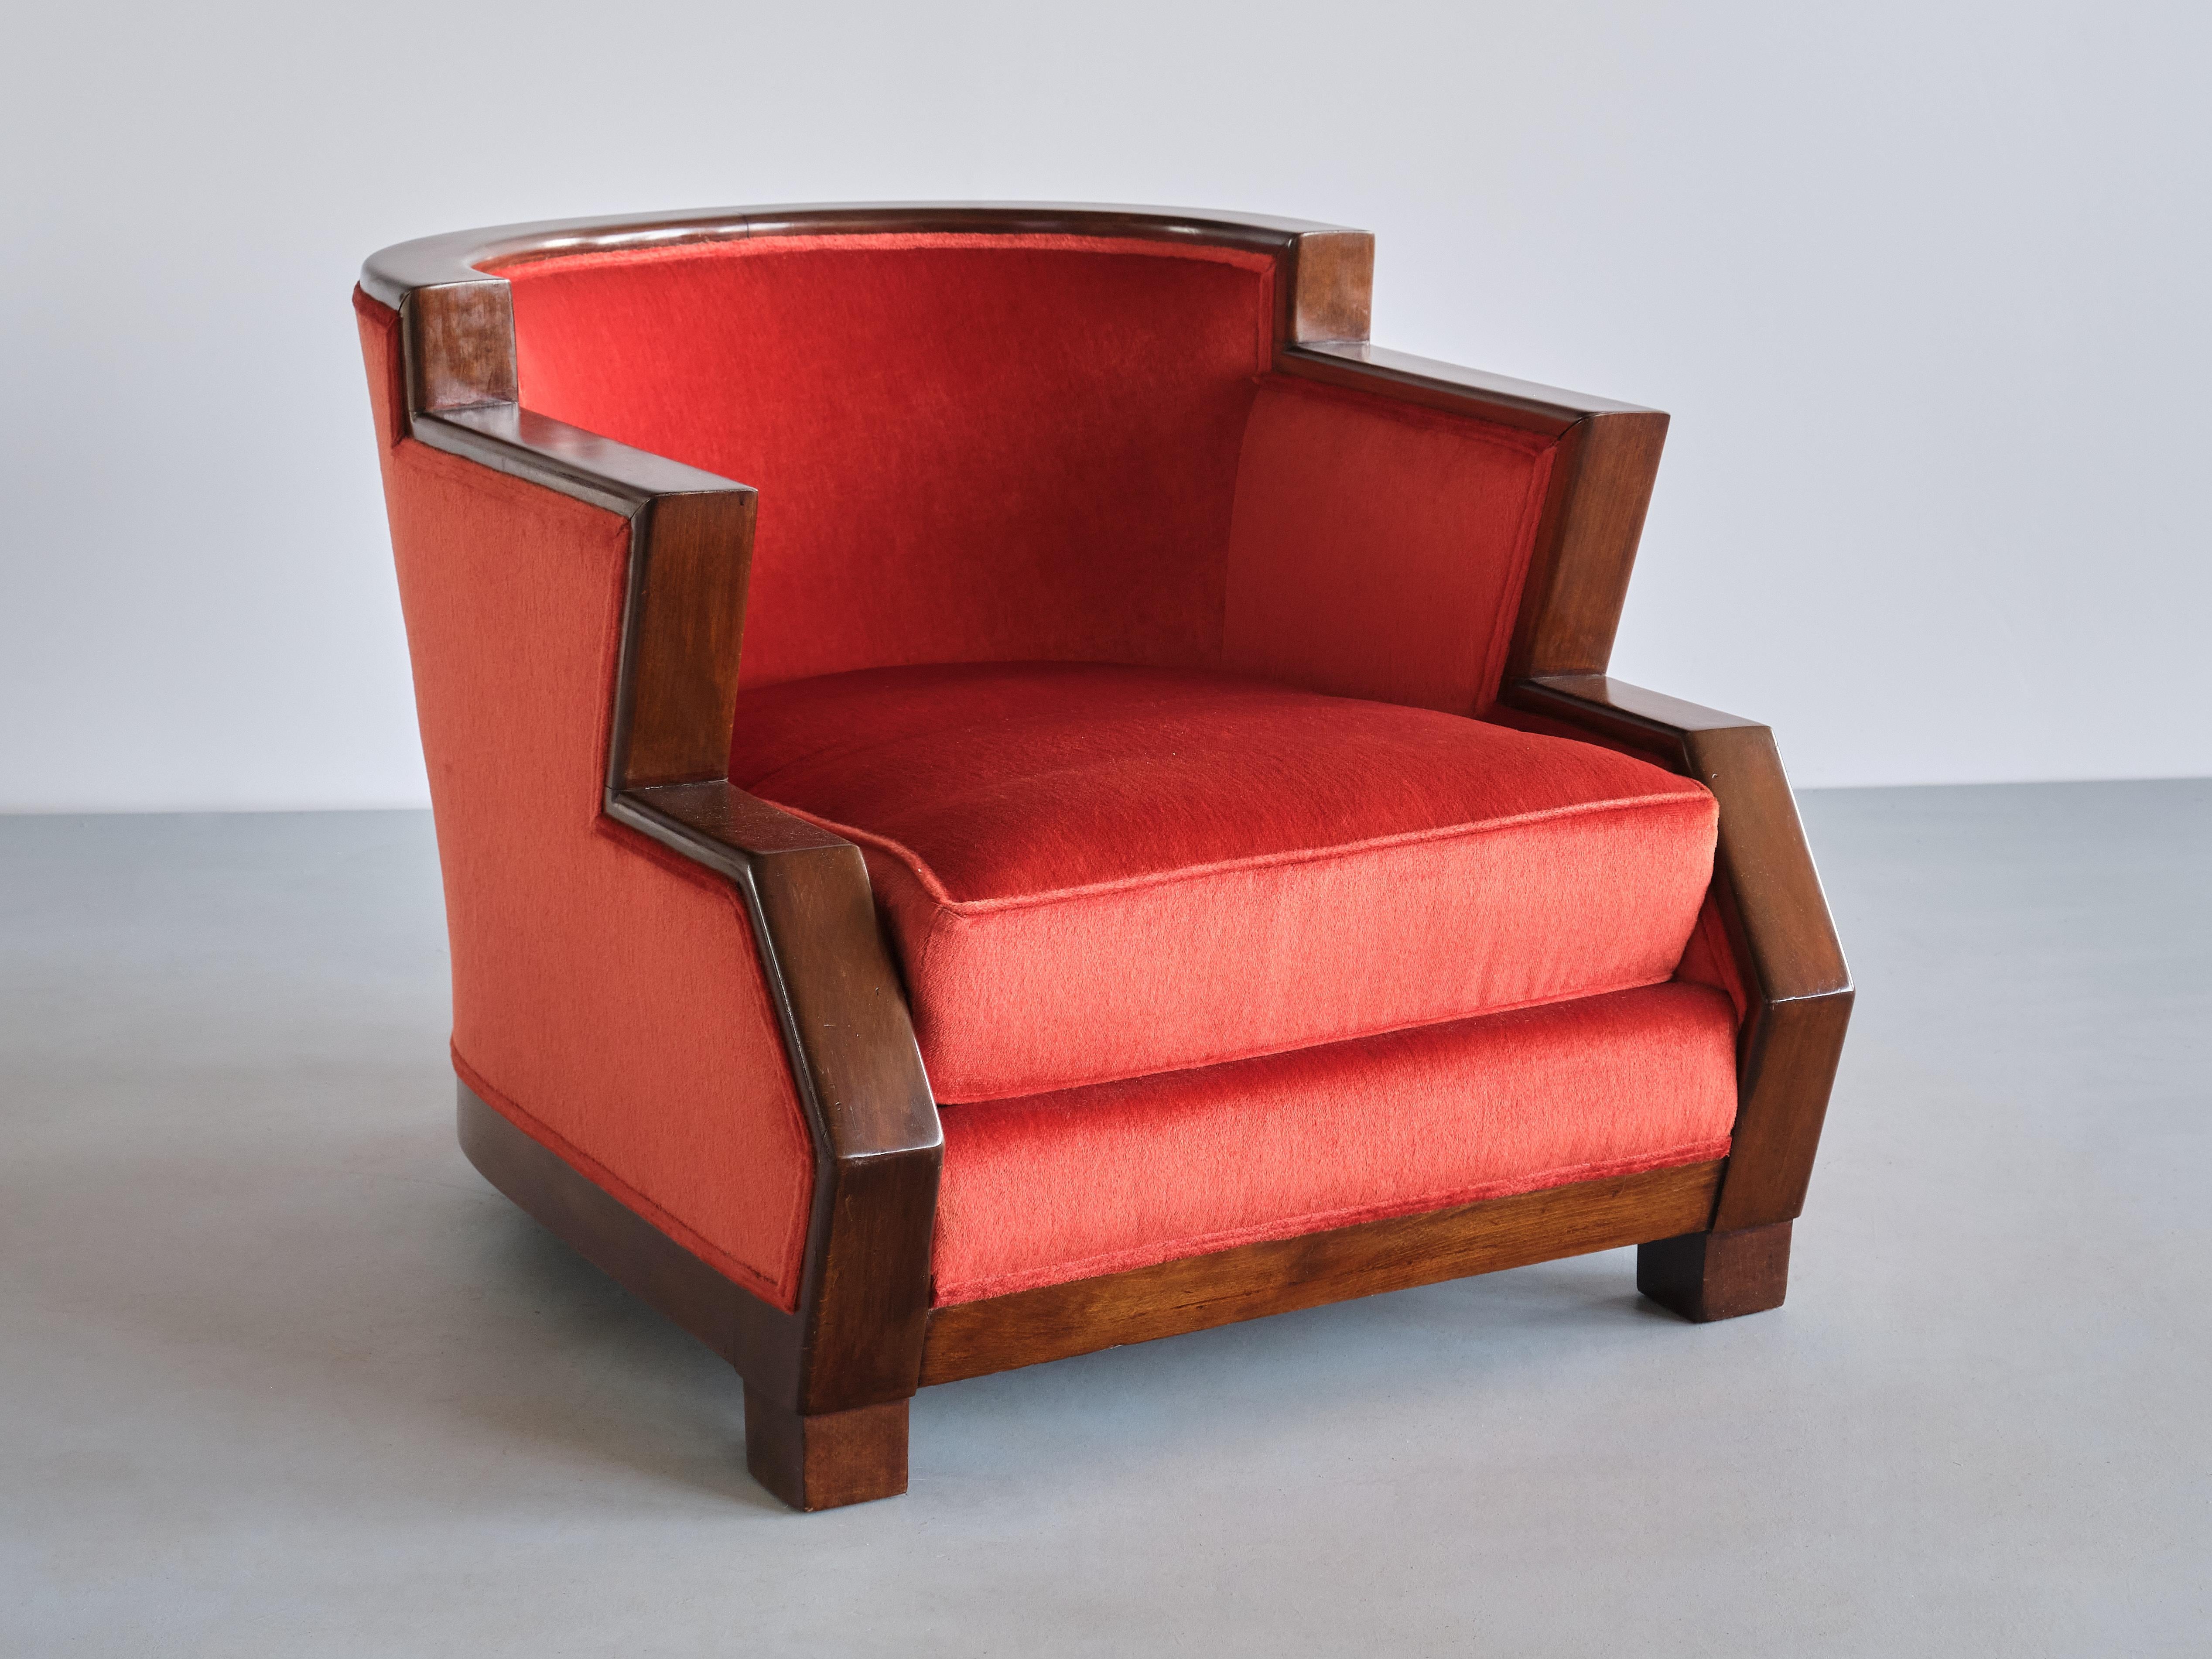 Ce fauteuil Art déco remarquable a été fabriqué en Belgique au milieu des années 1920. La forme distincte, étagée et angulaire du design est un excellent exemple de l'influence du cubisme à cette époque particulière. L'originalité du design et le